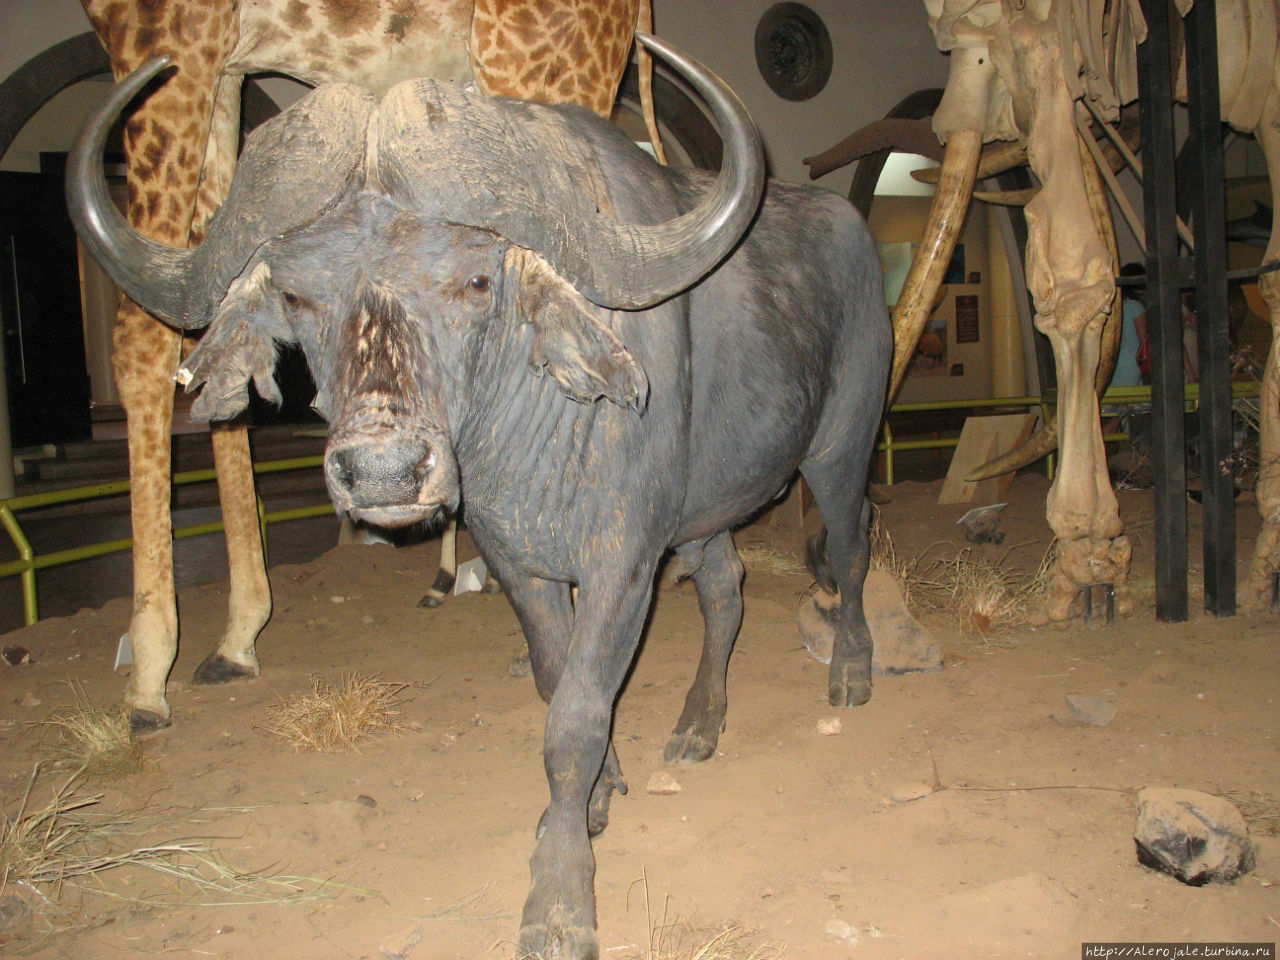 Музей в Наироби Найроби, Кения